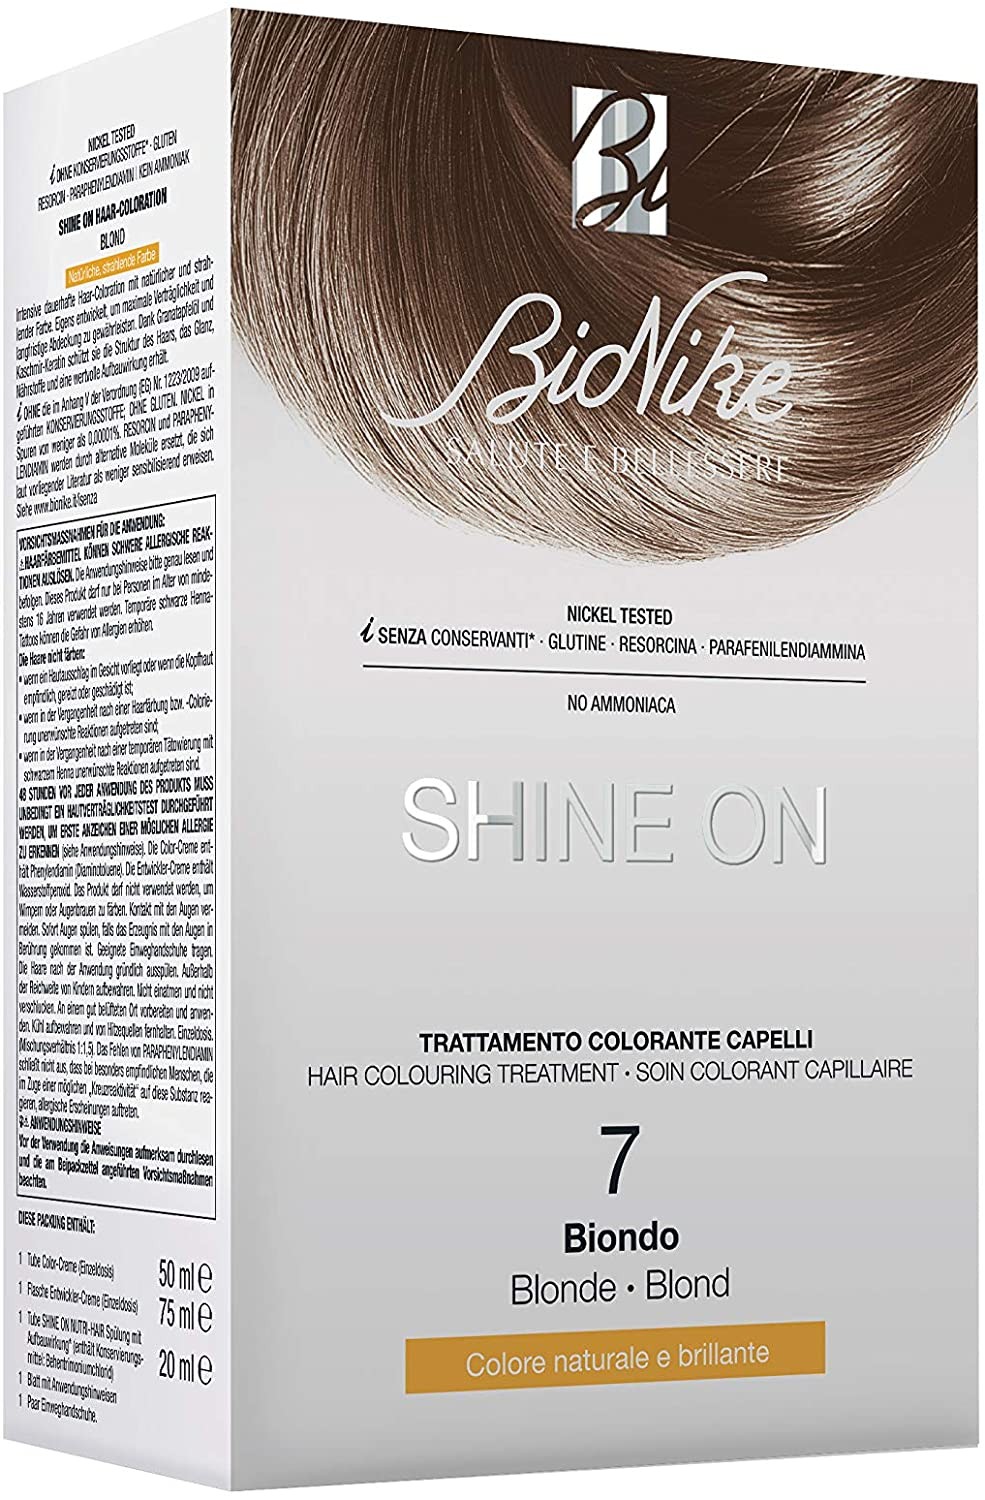 BioNIke Shine On Trattamento colorante capelli